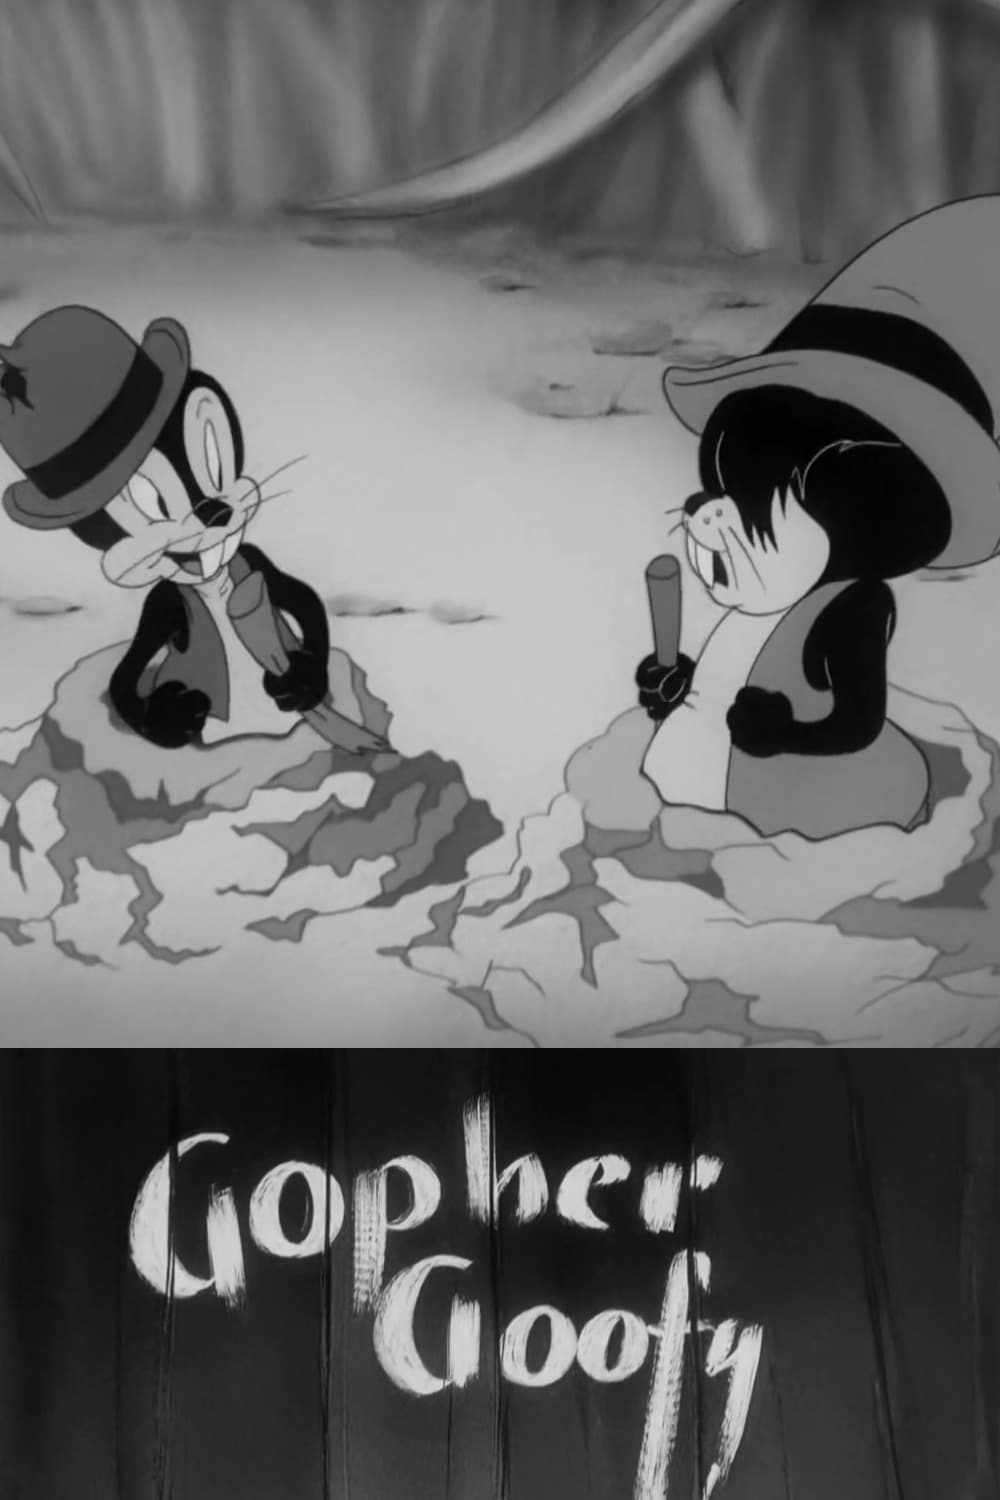 Gopher Goofy